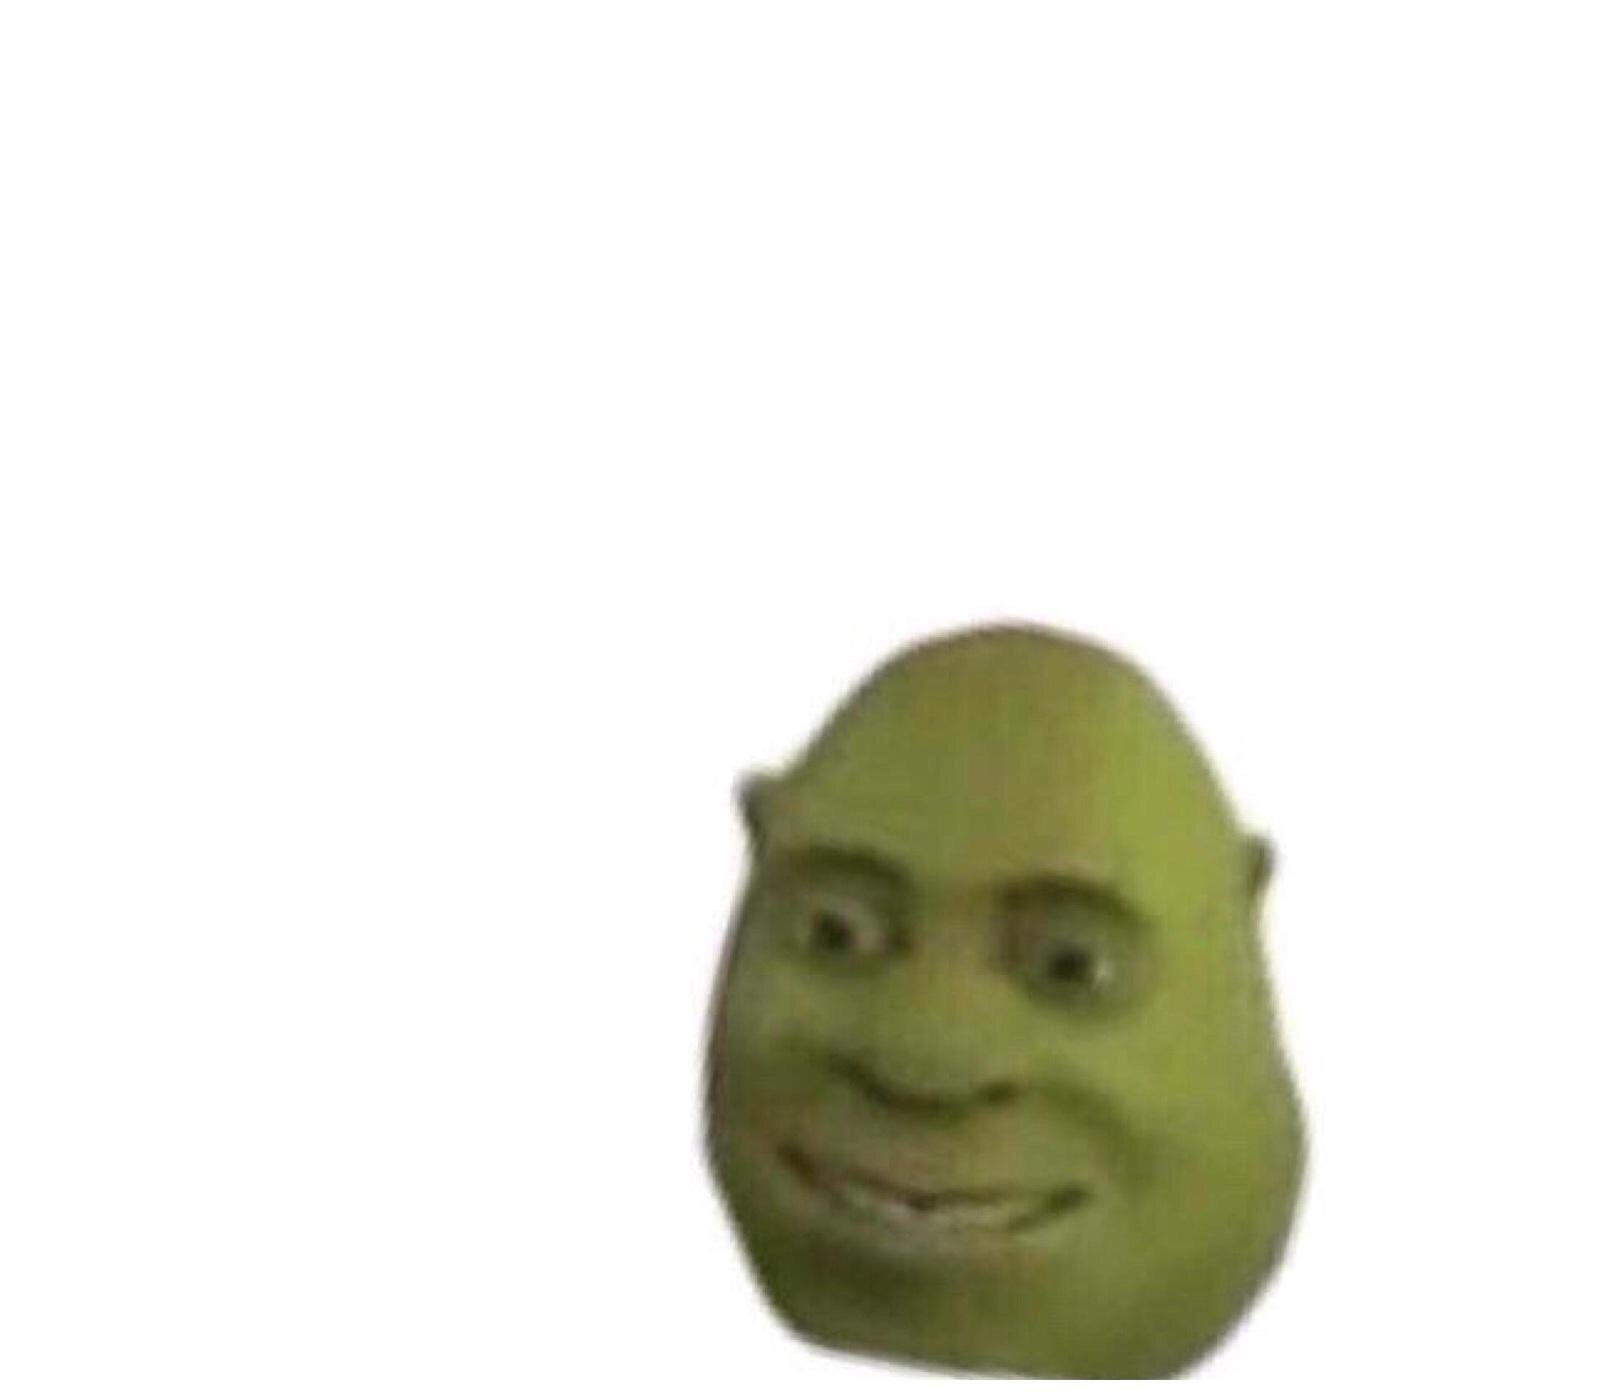 Shrek Face Meme Template